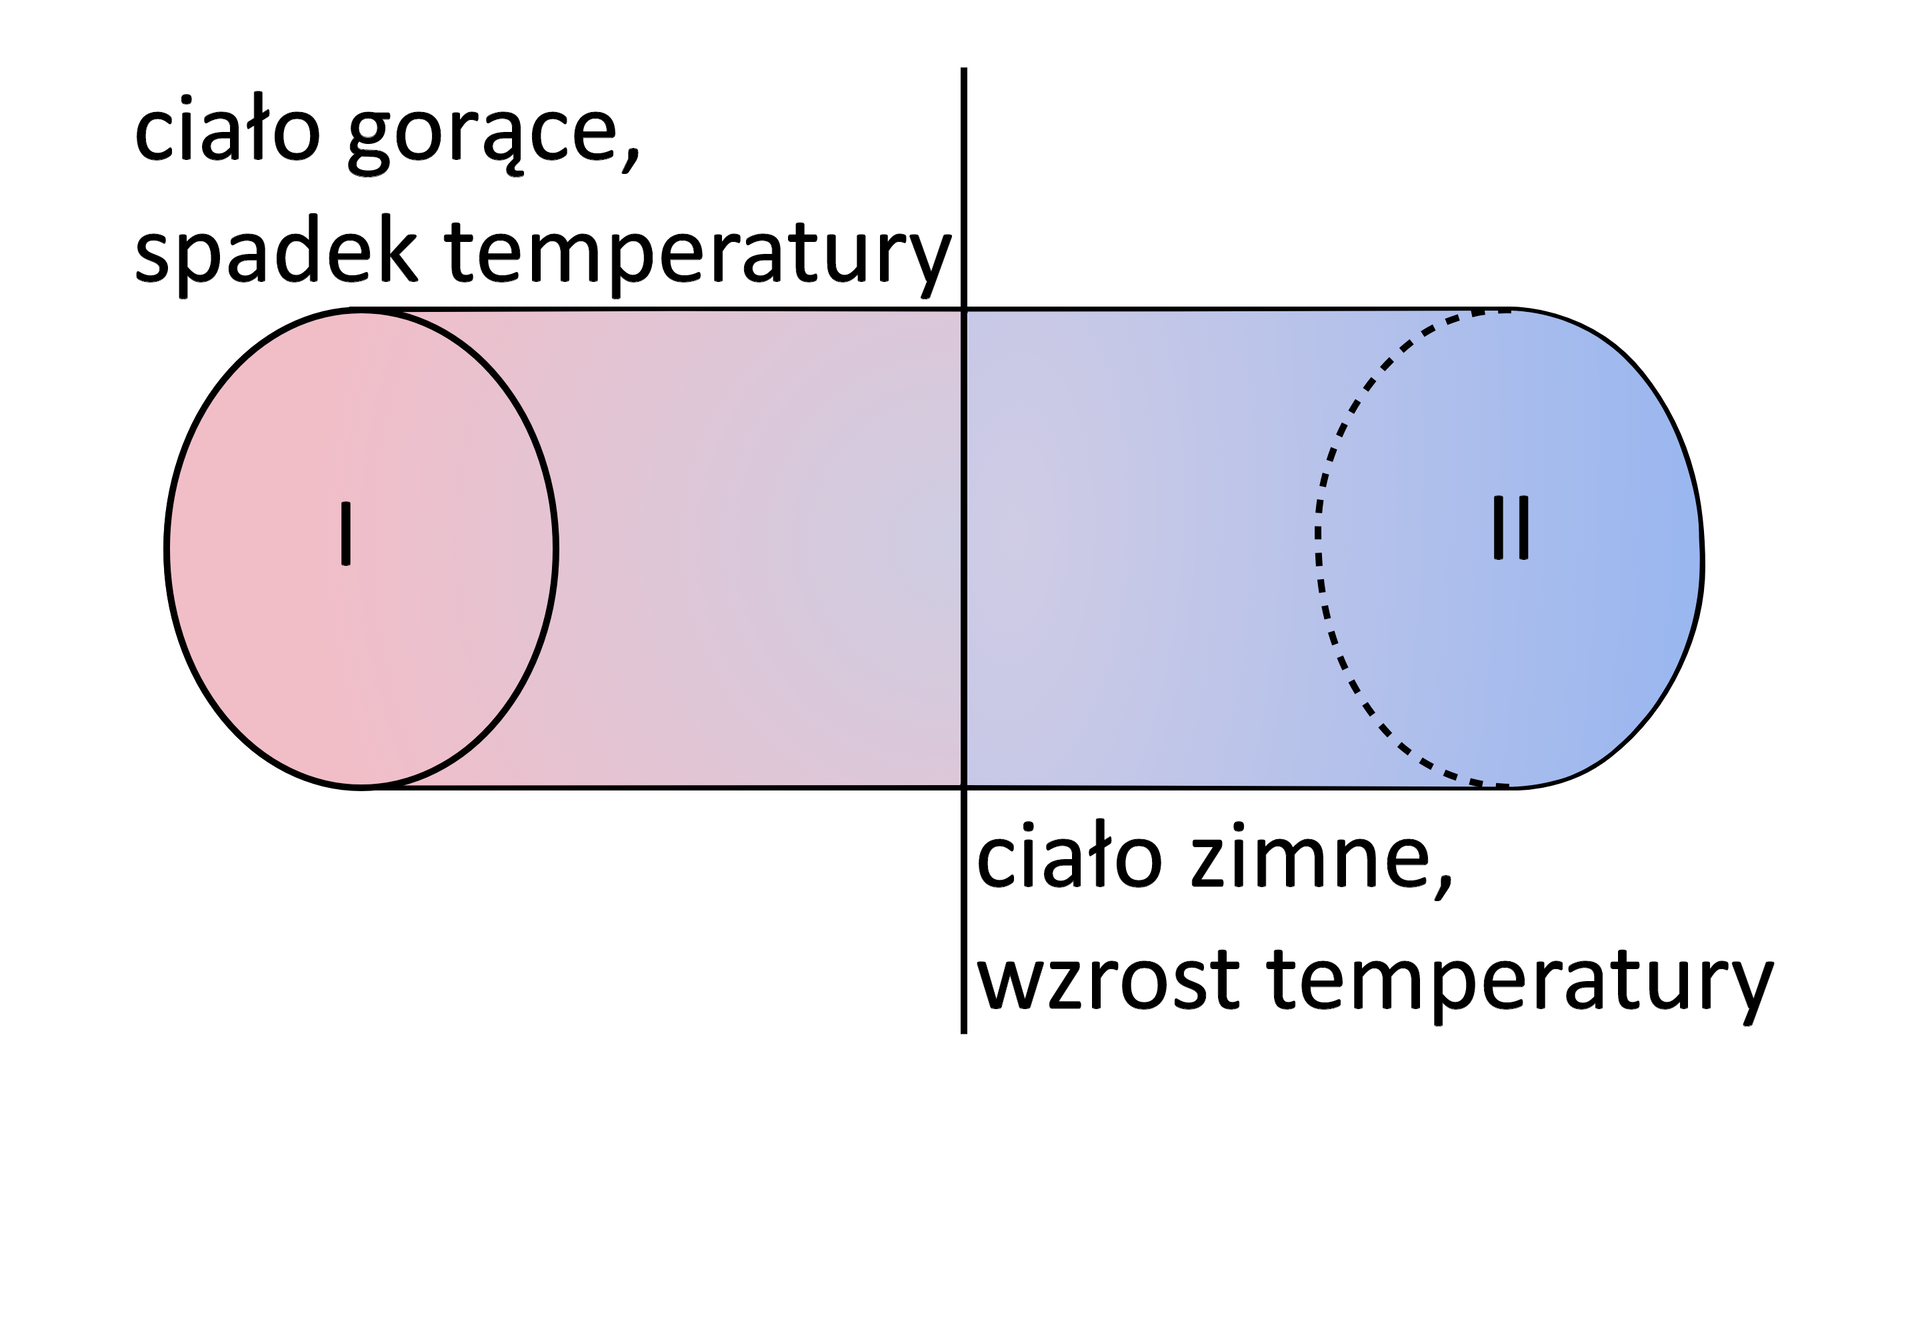 Ilustracja przedstawiająca dwa ciała, każde symbolizowane przez pionowy owal. Po lewej stronie znajduje się ciało gorące (w środku owalu jest rzymska cyfra jeden), zaś po prawej ciało zimne (w środku owalu jest rzymska cyfra dwa). Pomiędzy owalami poprowadzono pionową linię. Po lewej stronie od pionowej linii, tam, gdzie jest ciało gorące, znajduje się napis: spadek temperatury, po prawej stronie - tam, gdzie ciało zimne - jest napis: wzrost temperatury. Po stronie ciała gorącego jest pasmo koloru czerwonego, zbliżając się do pionowej linii zyskuje niebieskawy odcień. Za pionową linią w kierunku ciała zimnego kolor pasma zmienia się z niebiesko‑czerwonego na niebieski. 